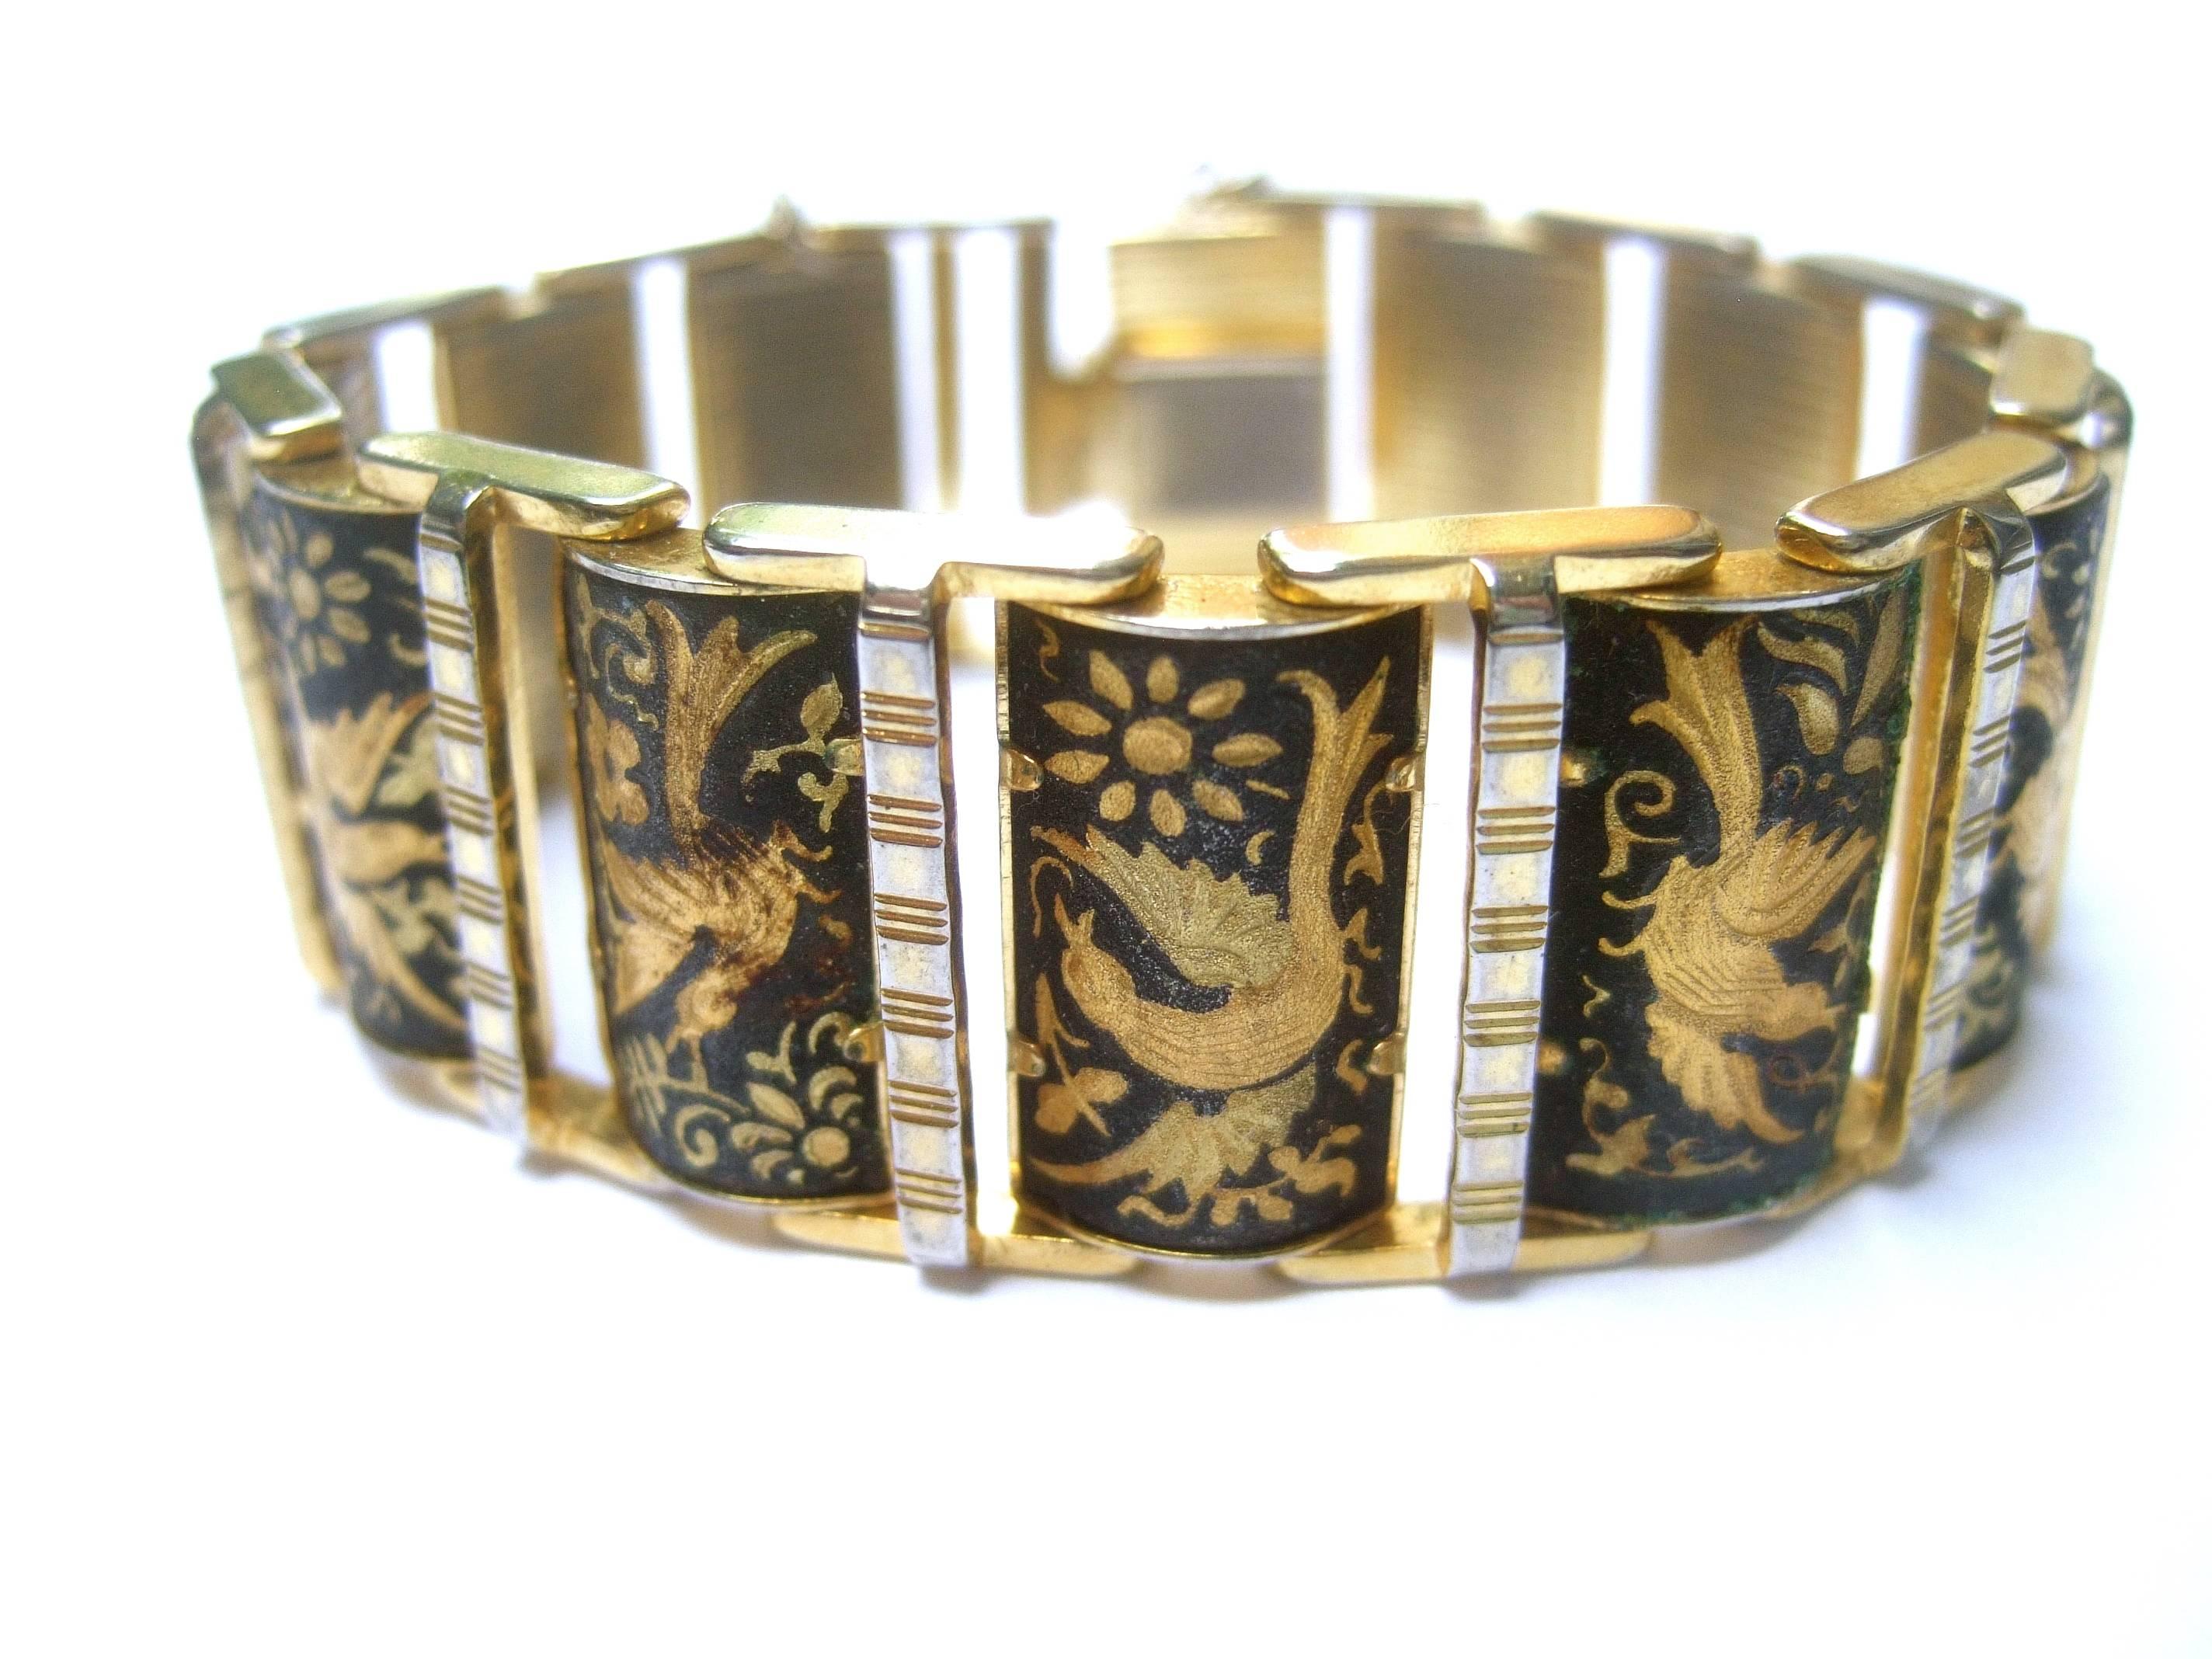 Exquis bracelet à maillons en métal doré et gravé sur le thème de l'oiseau, vers 1960
L'élégant bracelet rétro est conçu avec une série de 
de liens articulés

Chaque maillon représente un oiseau majestueux dans différentes postures
La collection